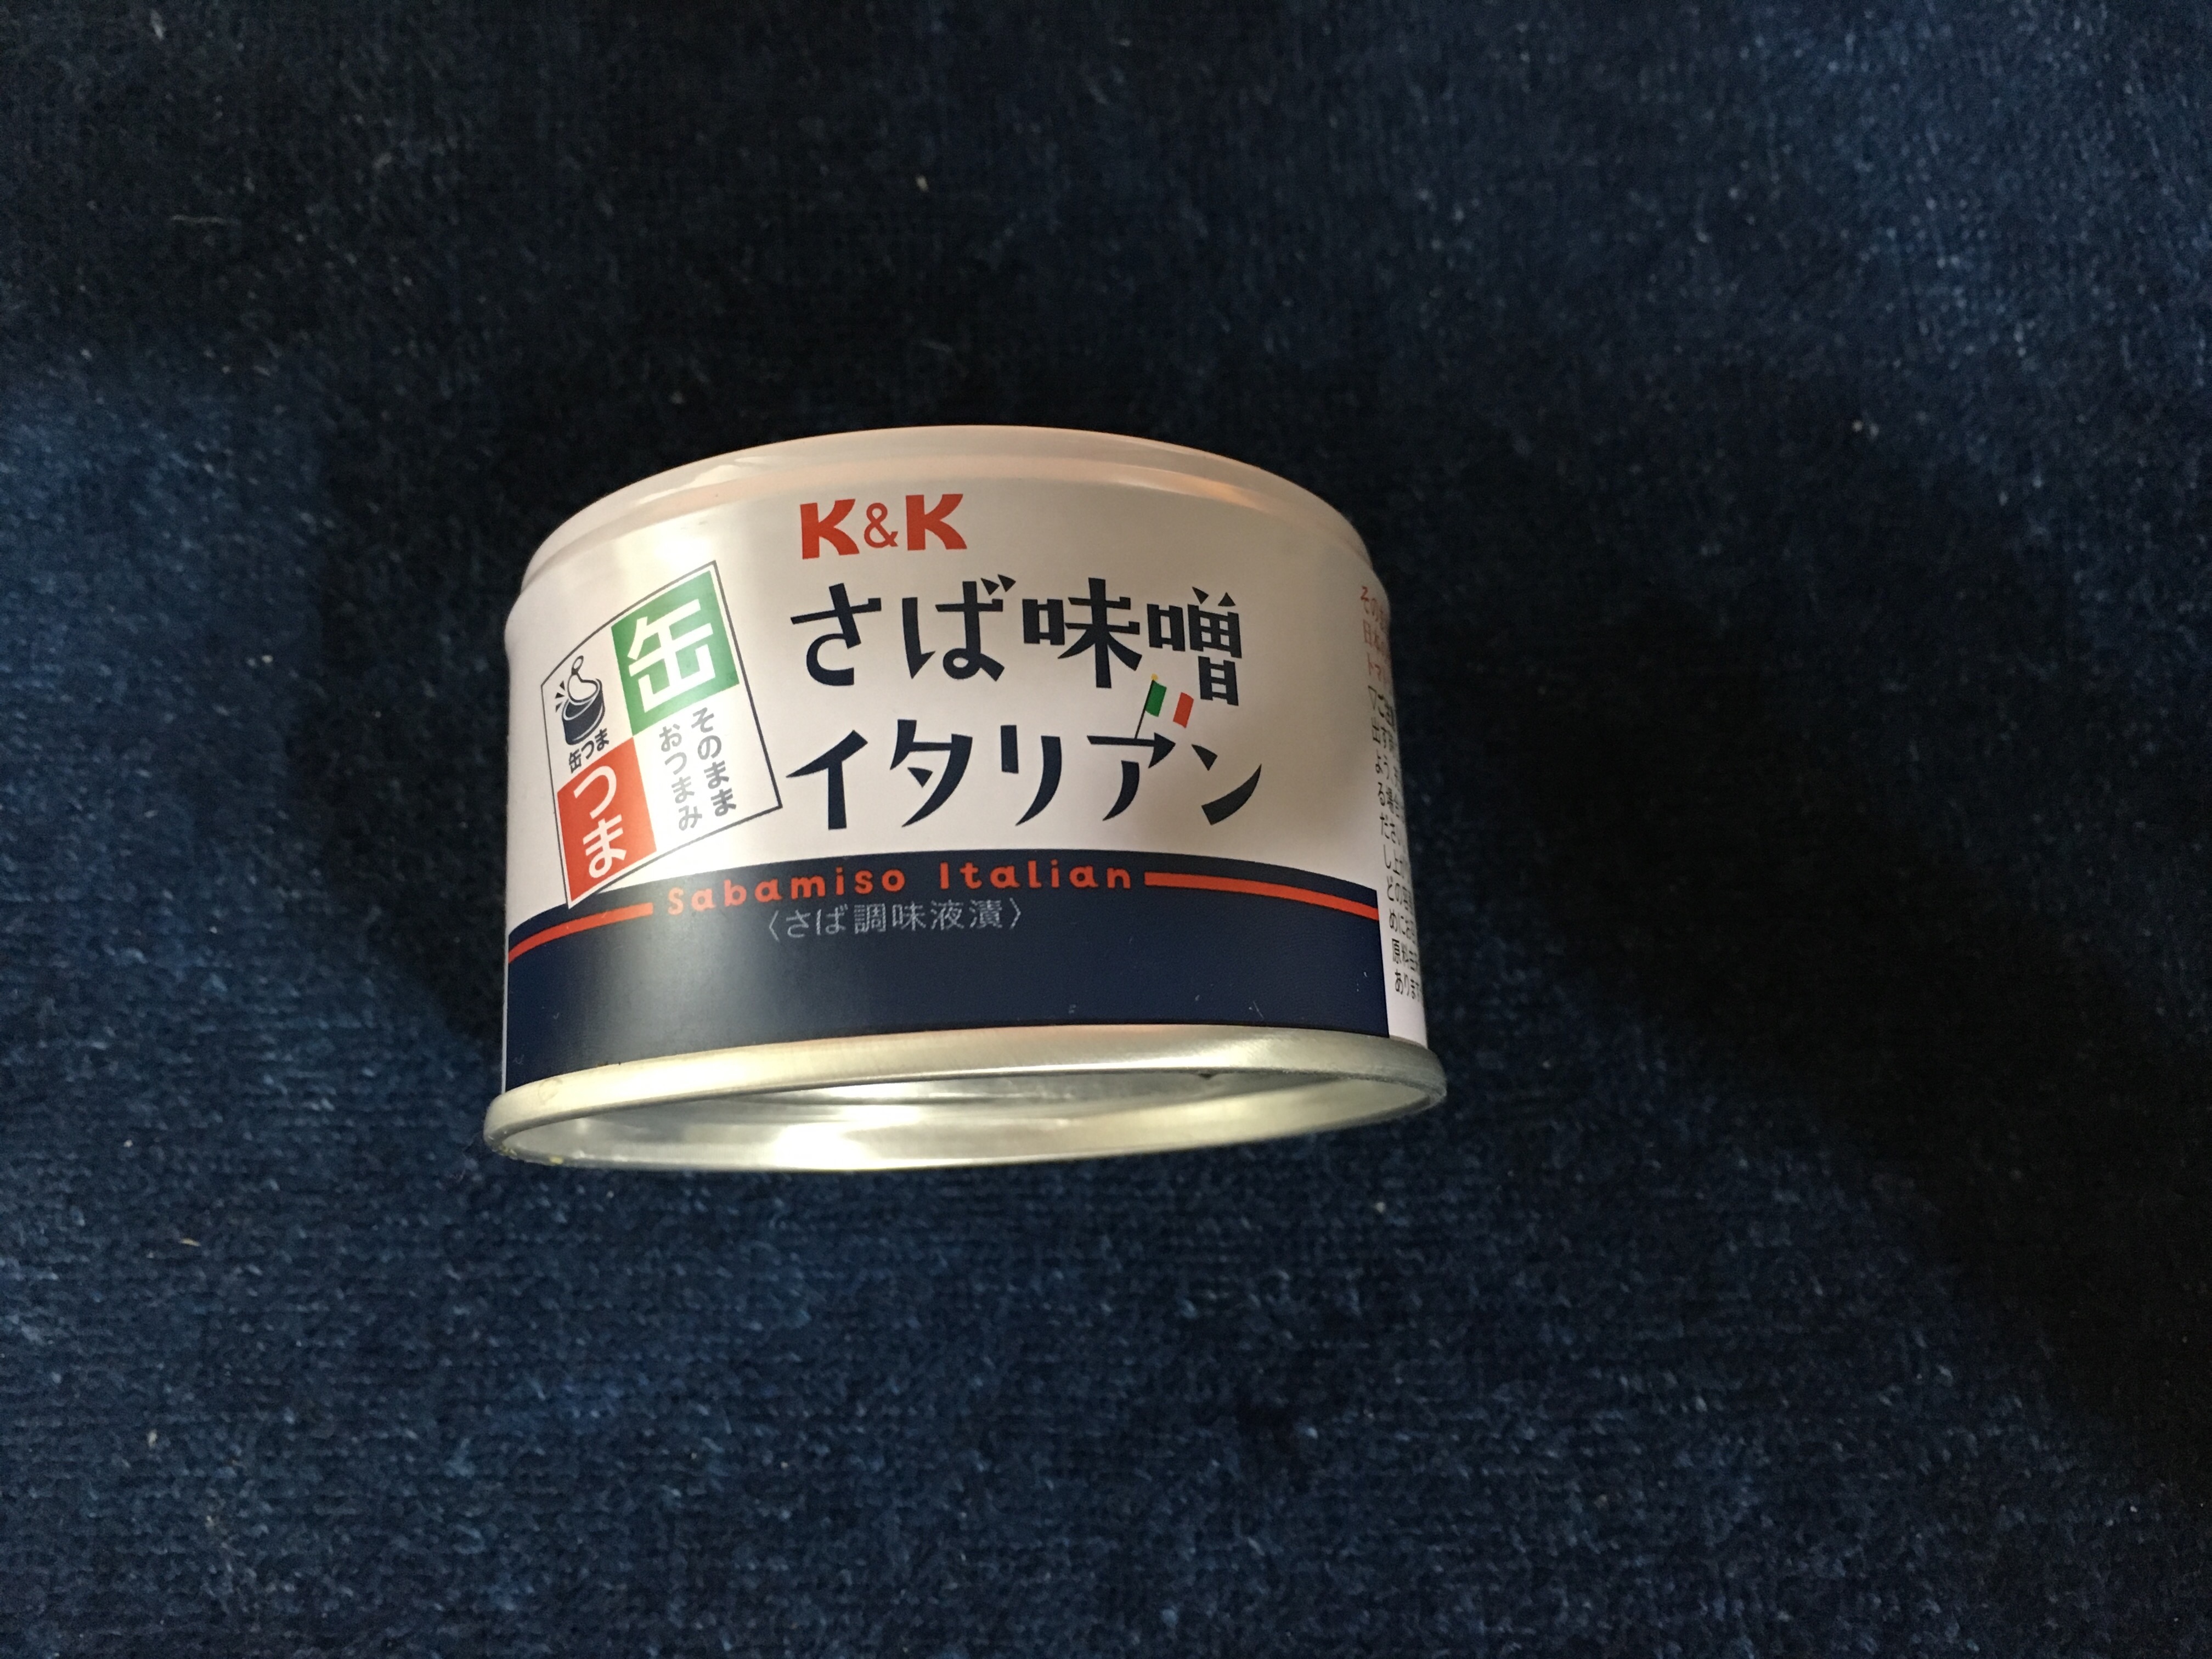 国分オリジナルブランド K&K さば味噌イタリアン 缶つま